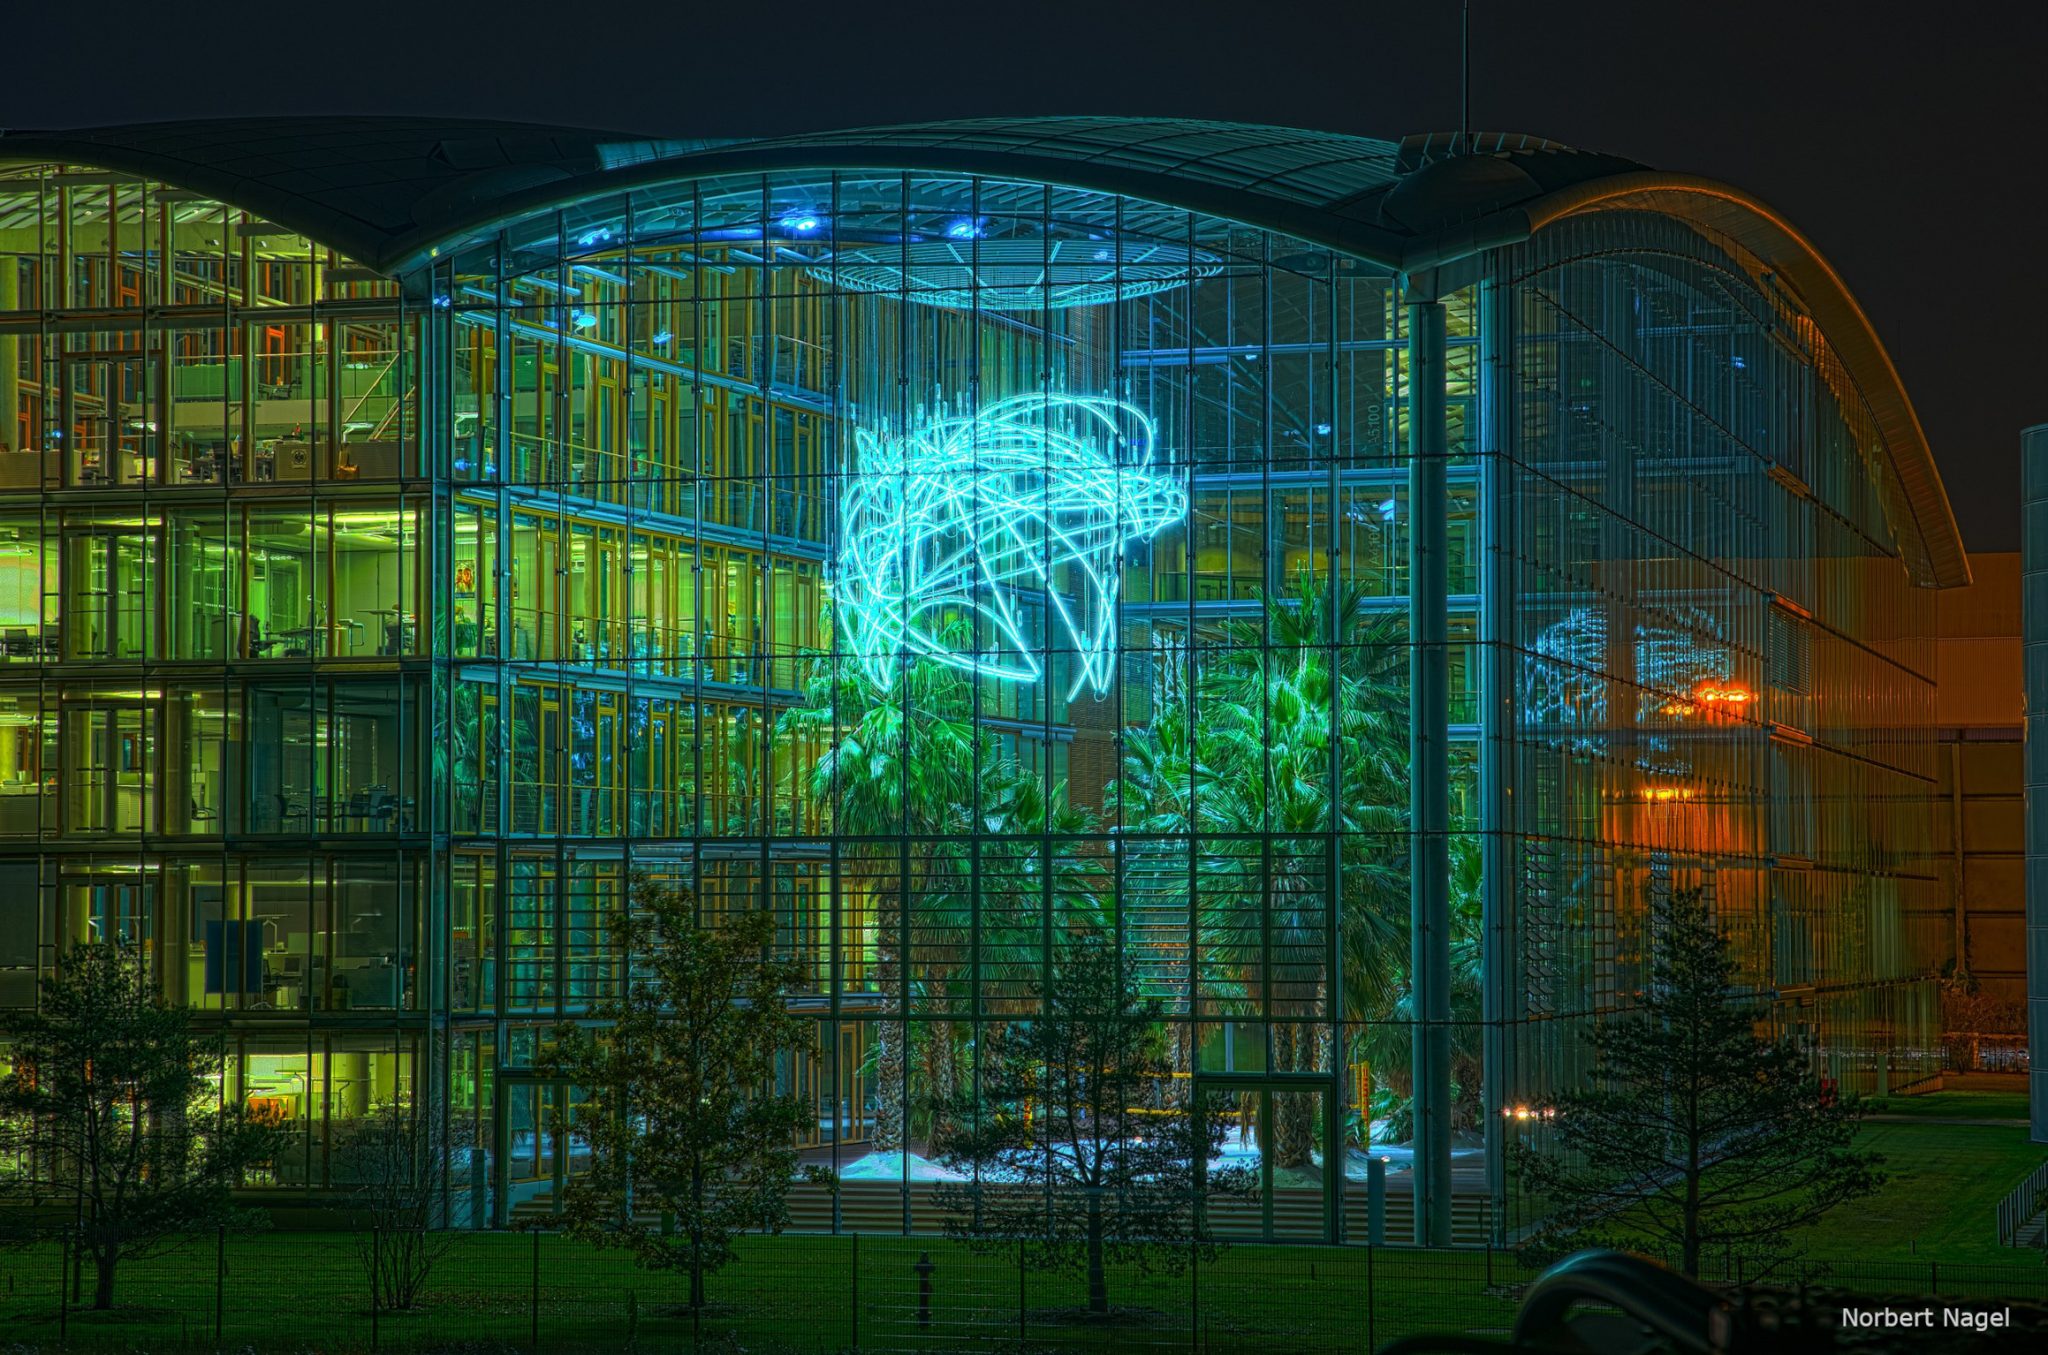 GBMpic_ Moderner Glasbau bei Nacht mit großer Neonlichtinstallation und sichtbarer Innenbegrünung.